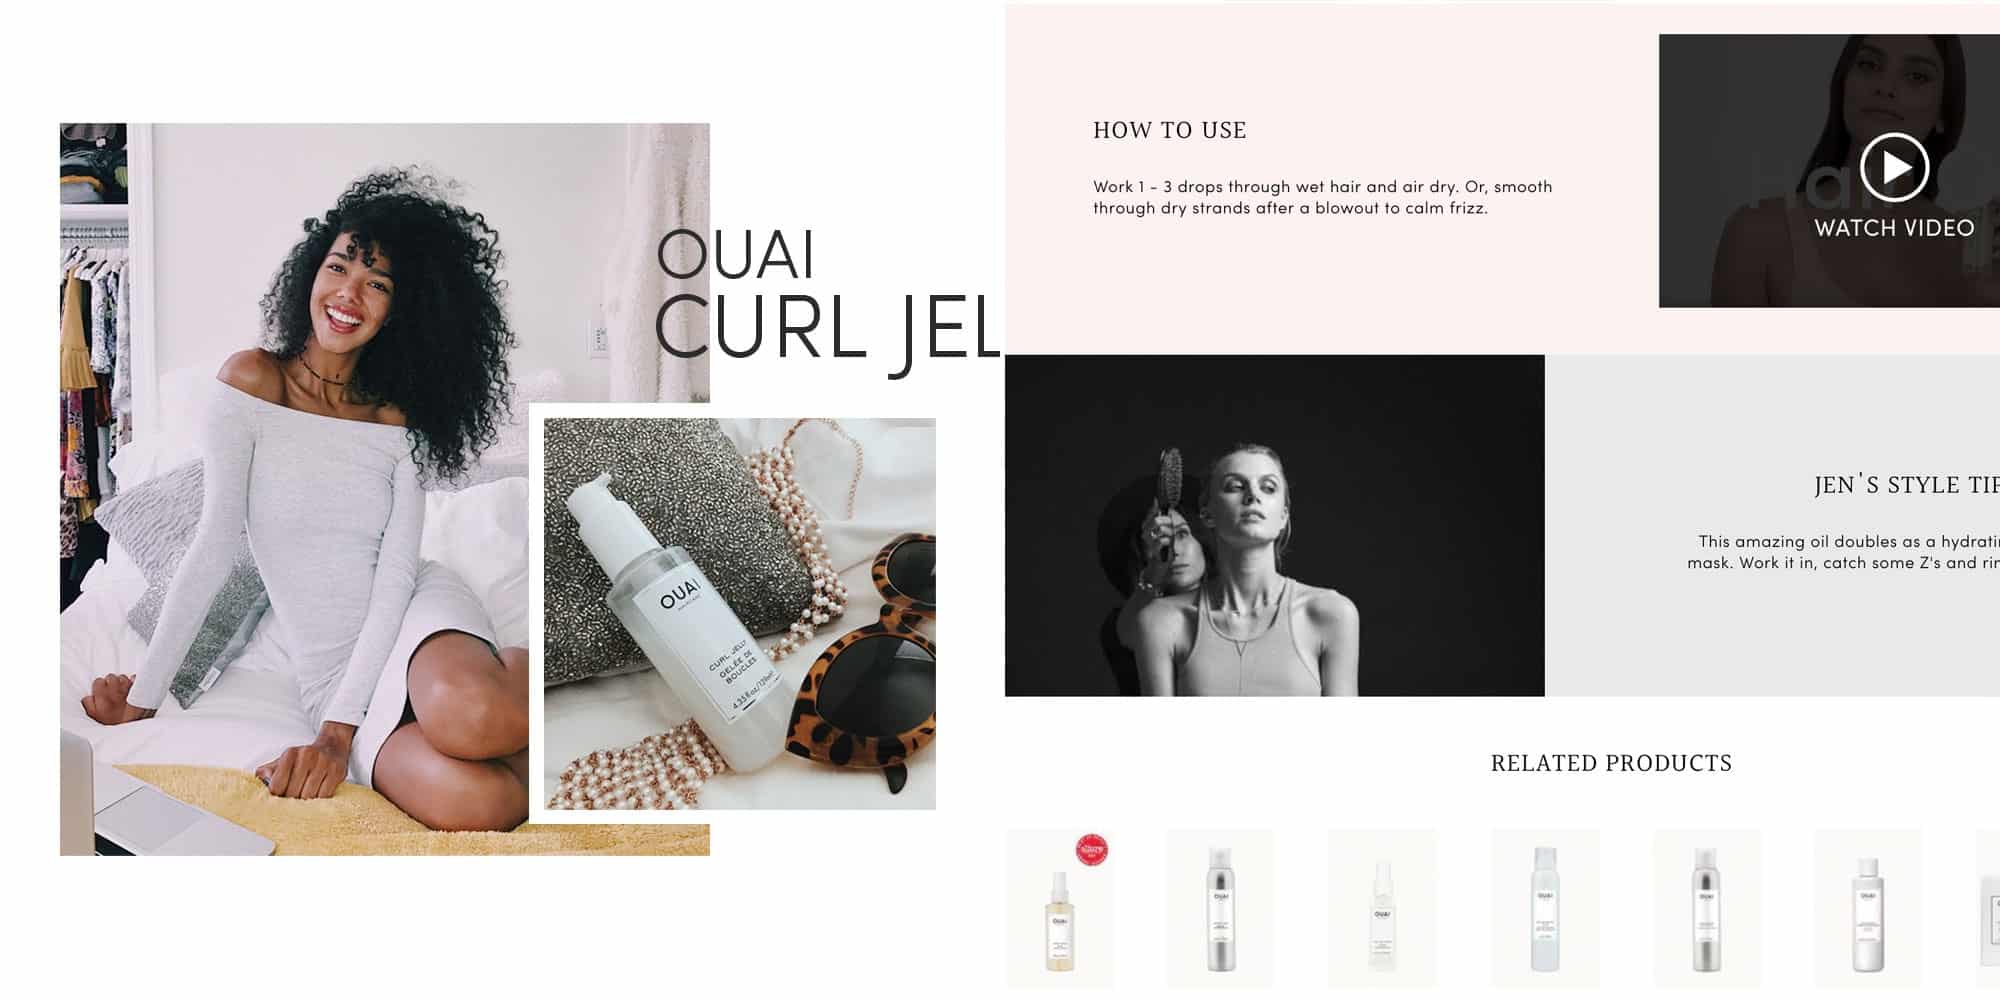 Shopify shop website design for Ouai by Davey & Krista